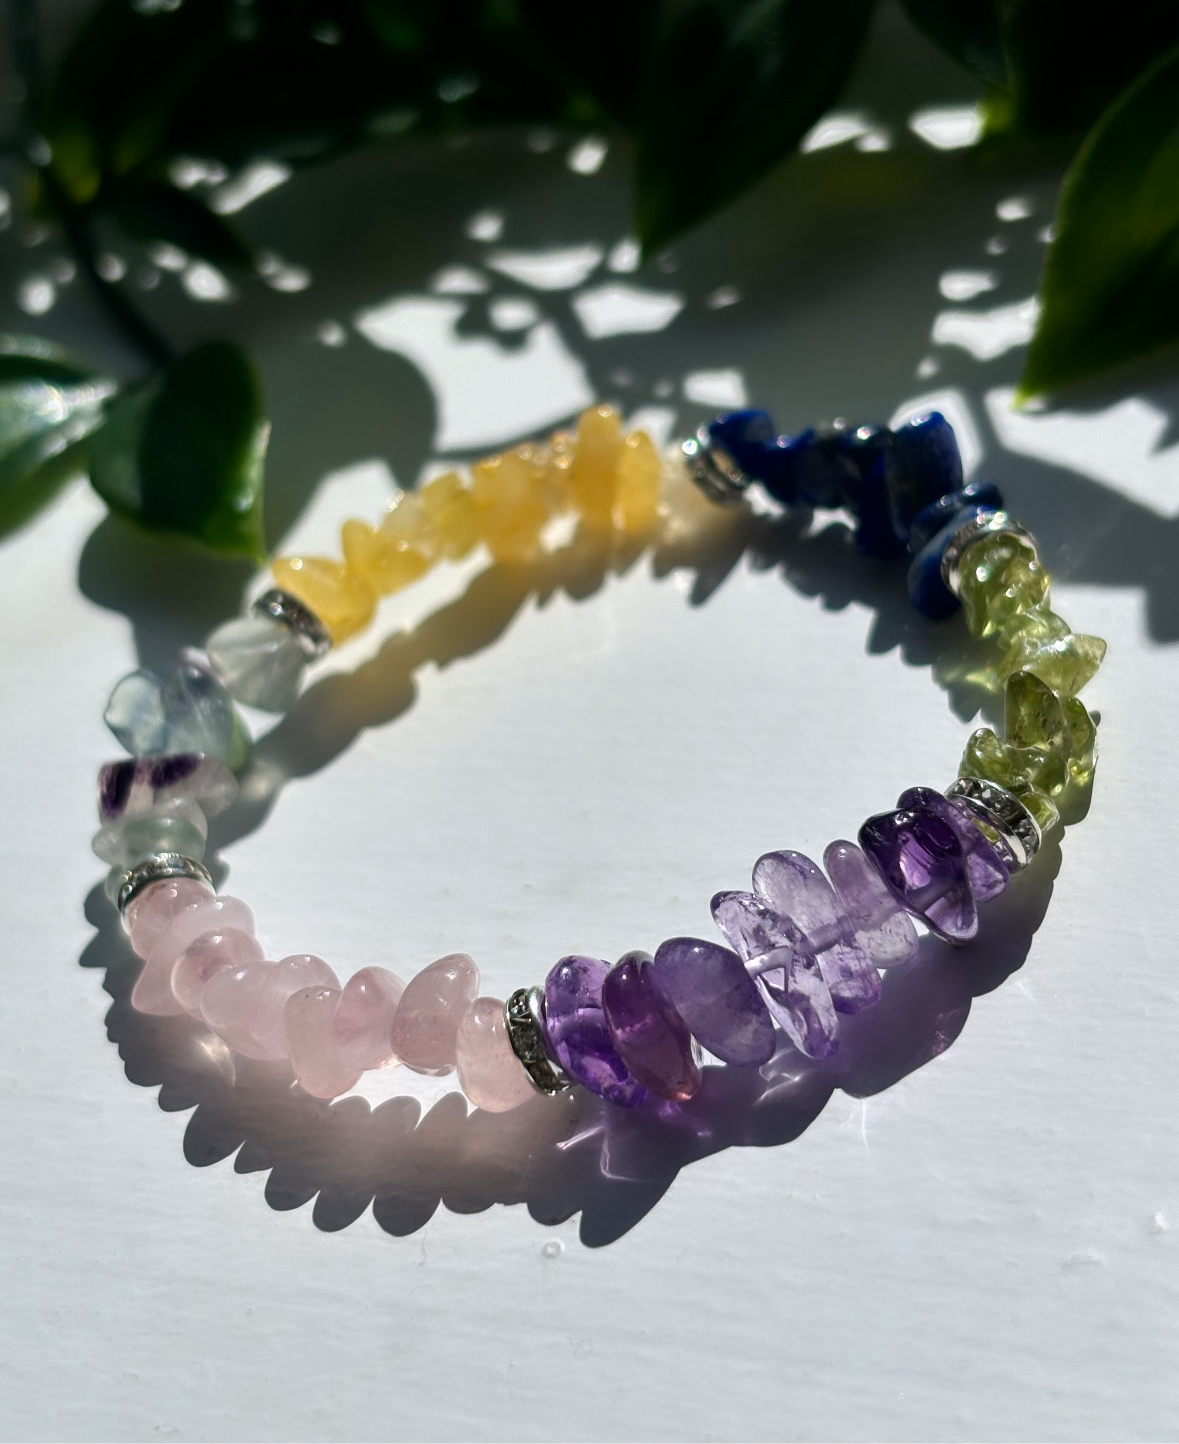 Mental health/depression support crystal healing bracelet